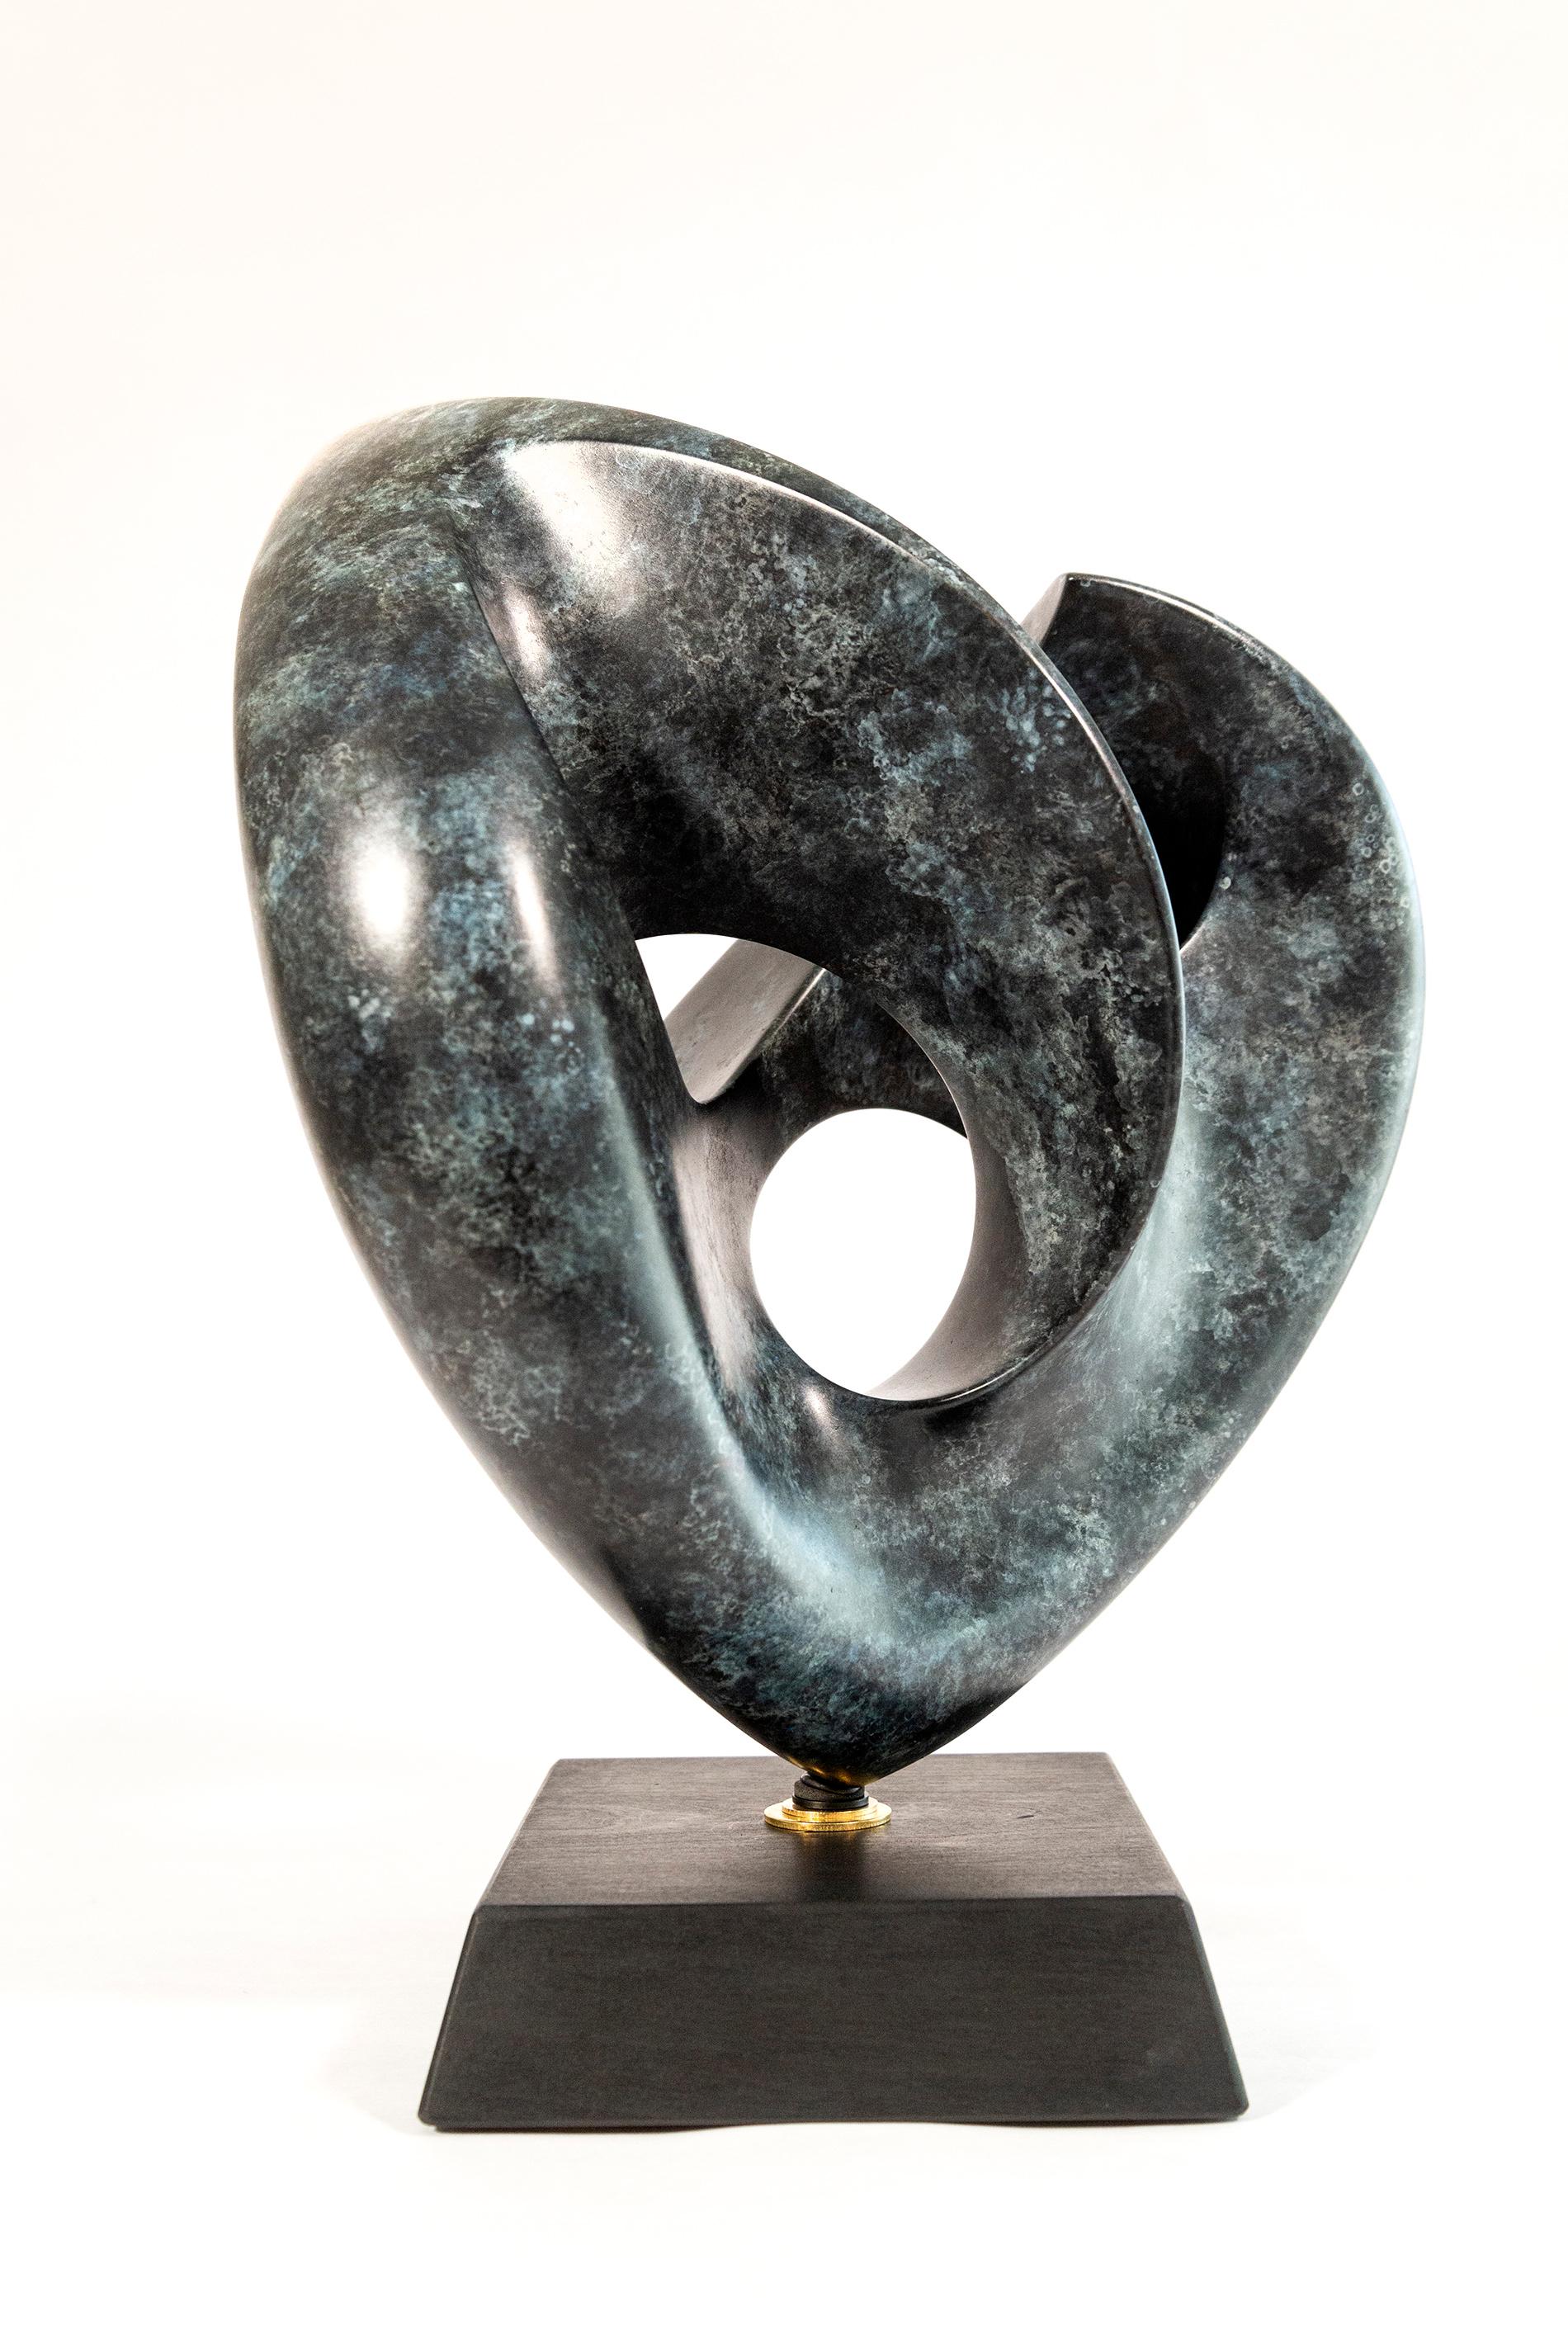 Die lyrischen, üppigen Linien dieser herzförmigen Bronzeskulptur wurden von dem amerikanischen Künstler David Chamberlain geschaffen. Die aus einem einzigen Stück gefertigte Skulptur ist stark patiniert und weist Türkisflecken in dunkler Bronze auf.